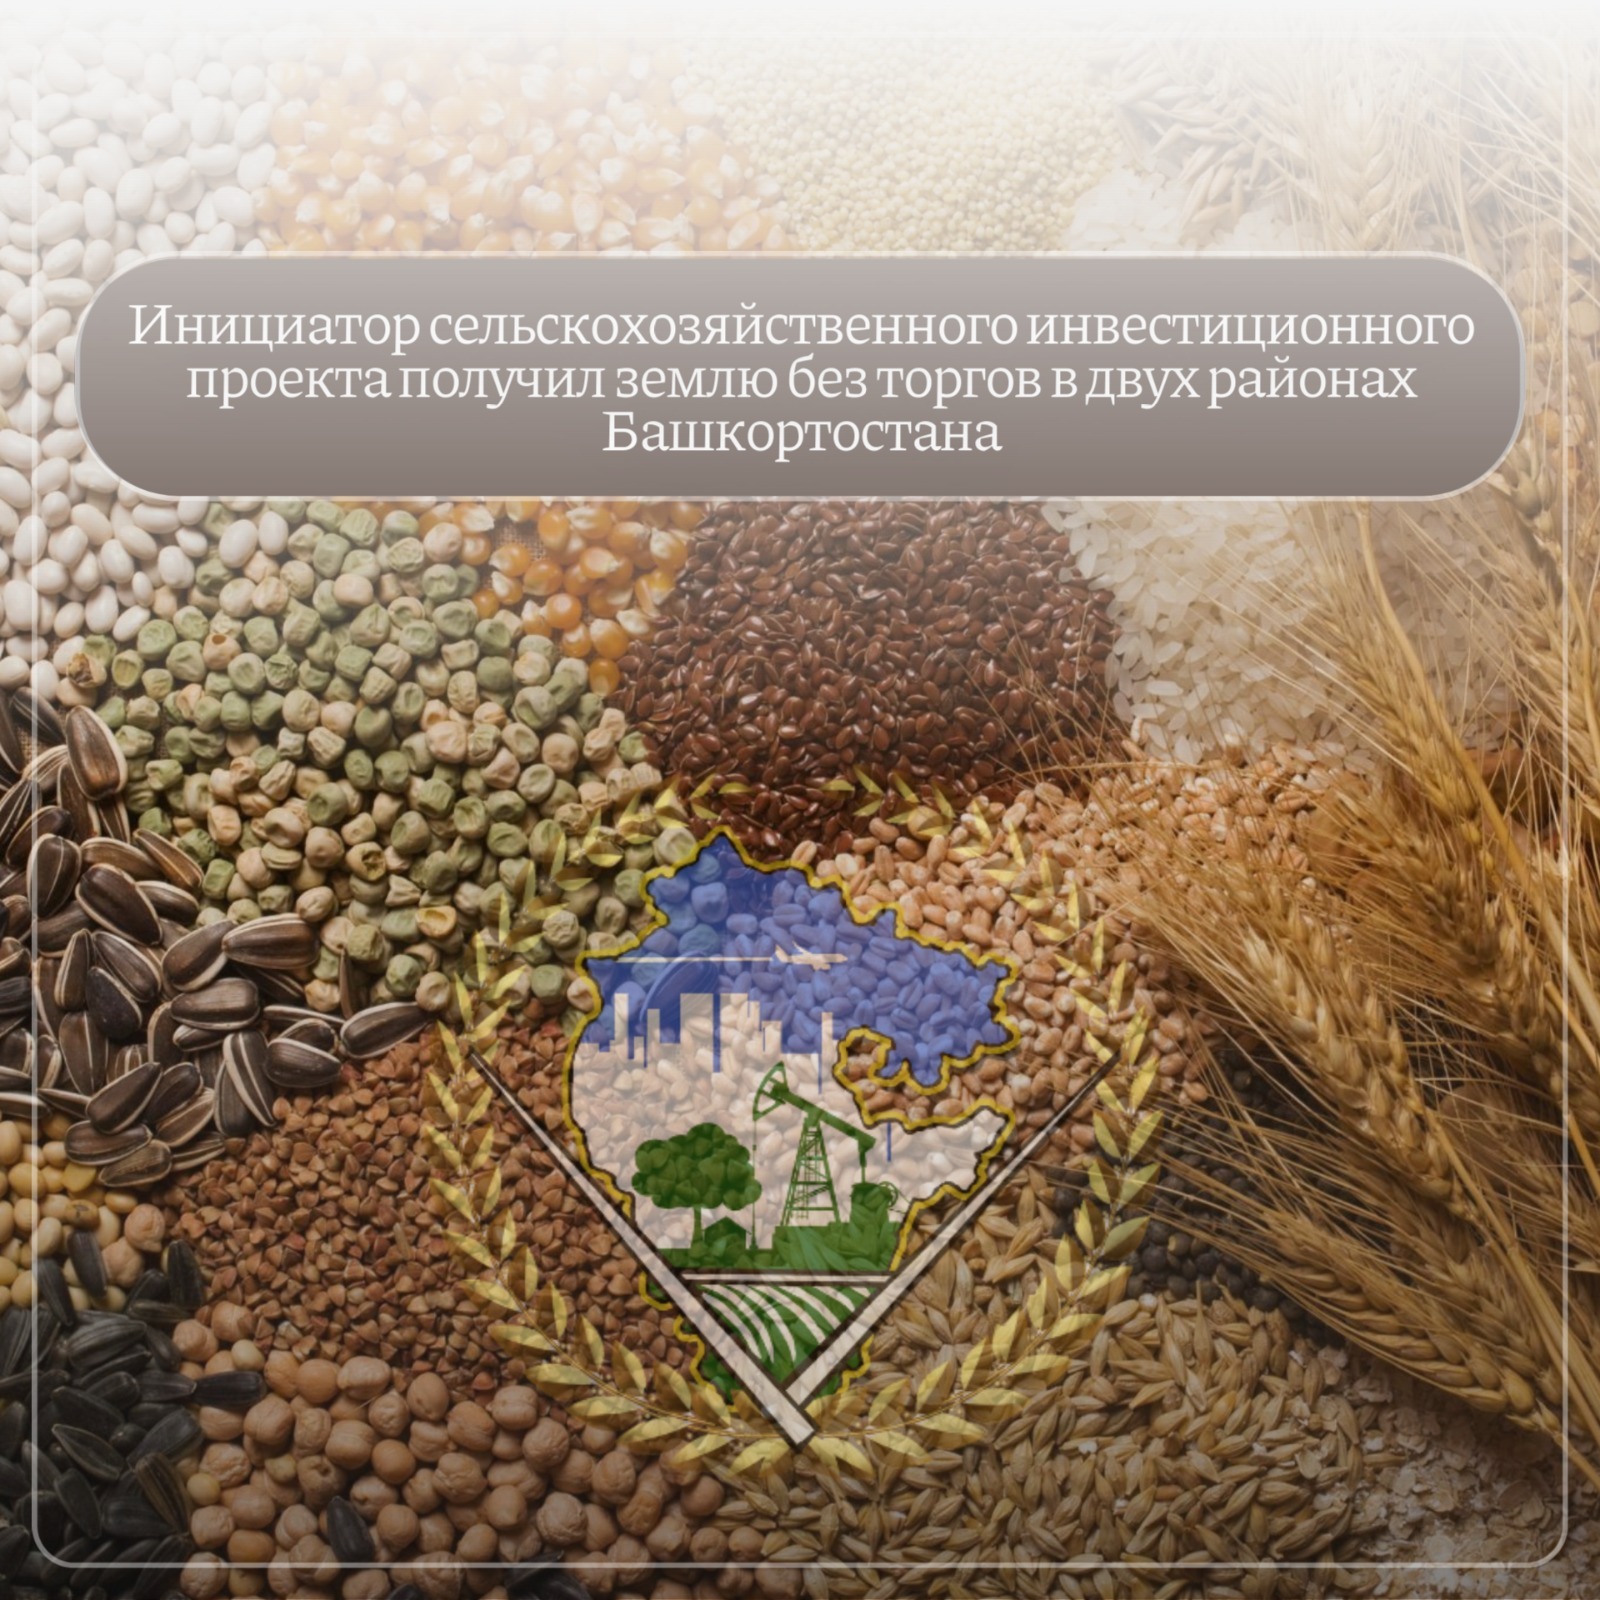 Инициатор сельскохозяйственного инвестиционного проекта получил землю без торгов в двух районах Башкортостана